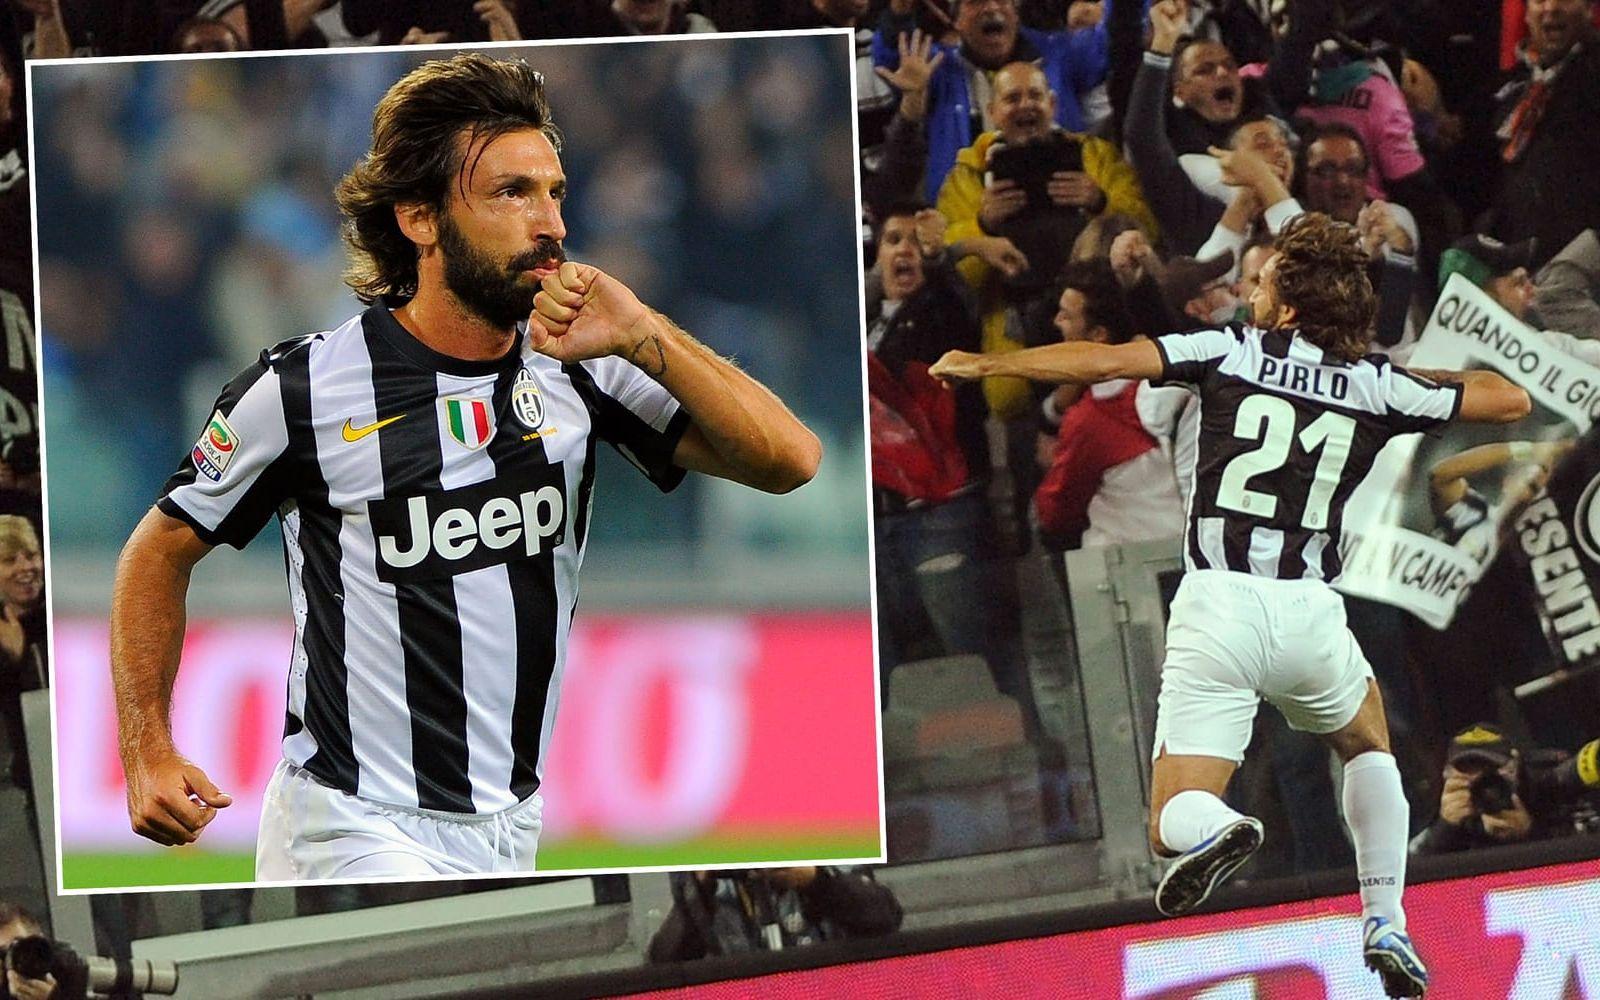 Värvningen av Pirlo hjälpte Juventus att vinna fyra raka ligatitlar – ett maktskifte i italiensk fotboll. En obegriplig transfermiss av Milan, med facit i hand. Foto: TT